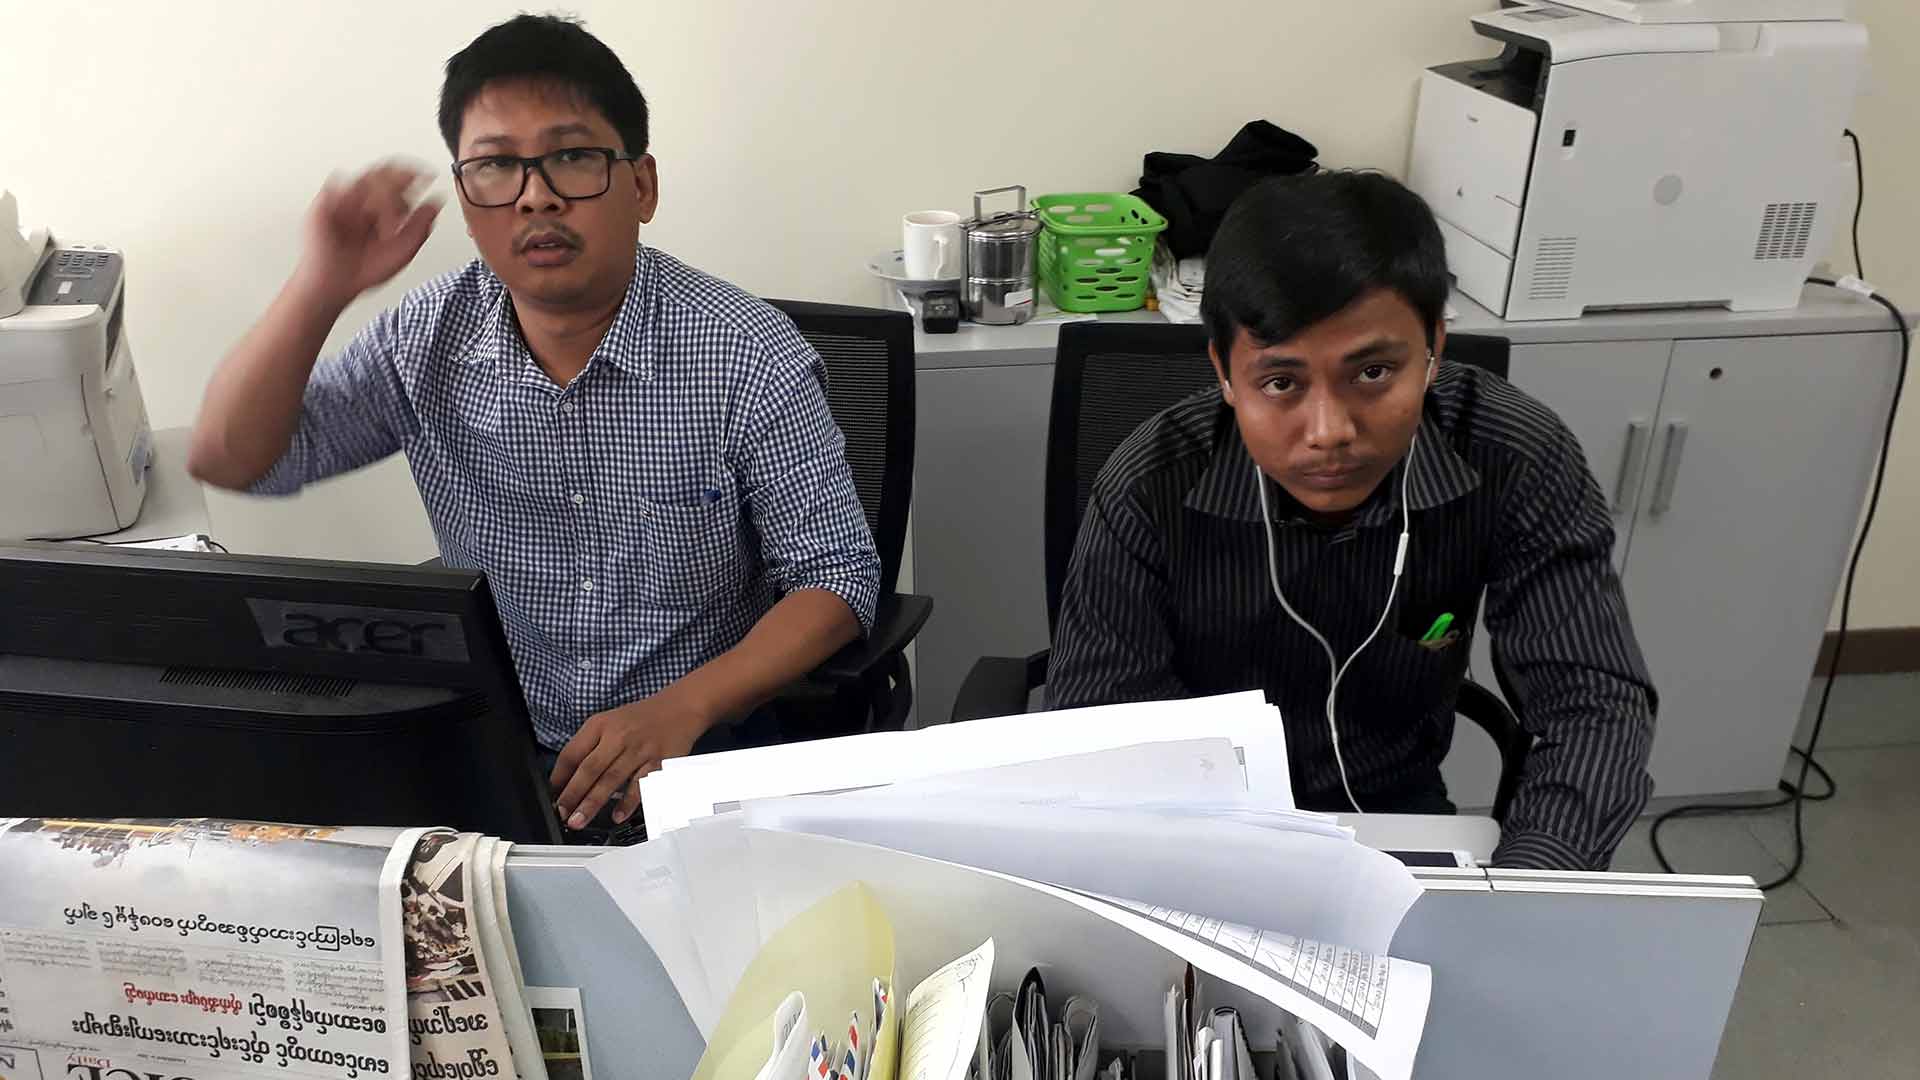 Presentan cargos contra dos periodistas por revelar "secretos oficiales" sobre la represión contra los rohingya